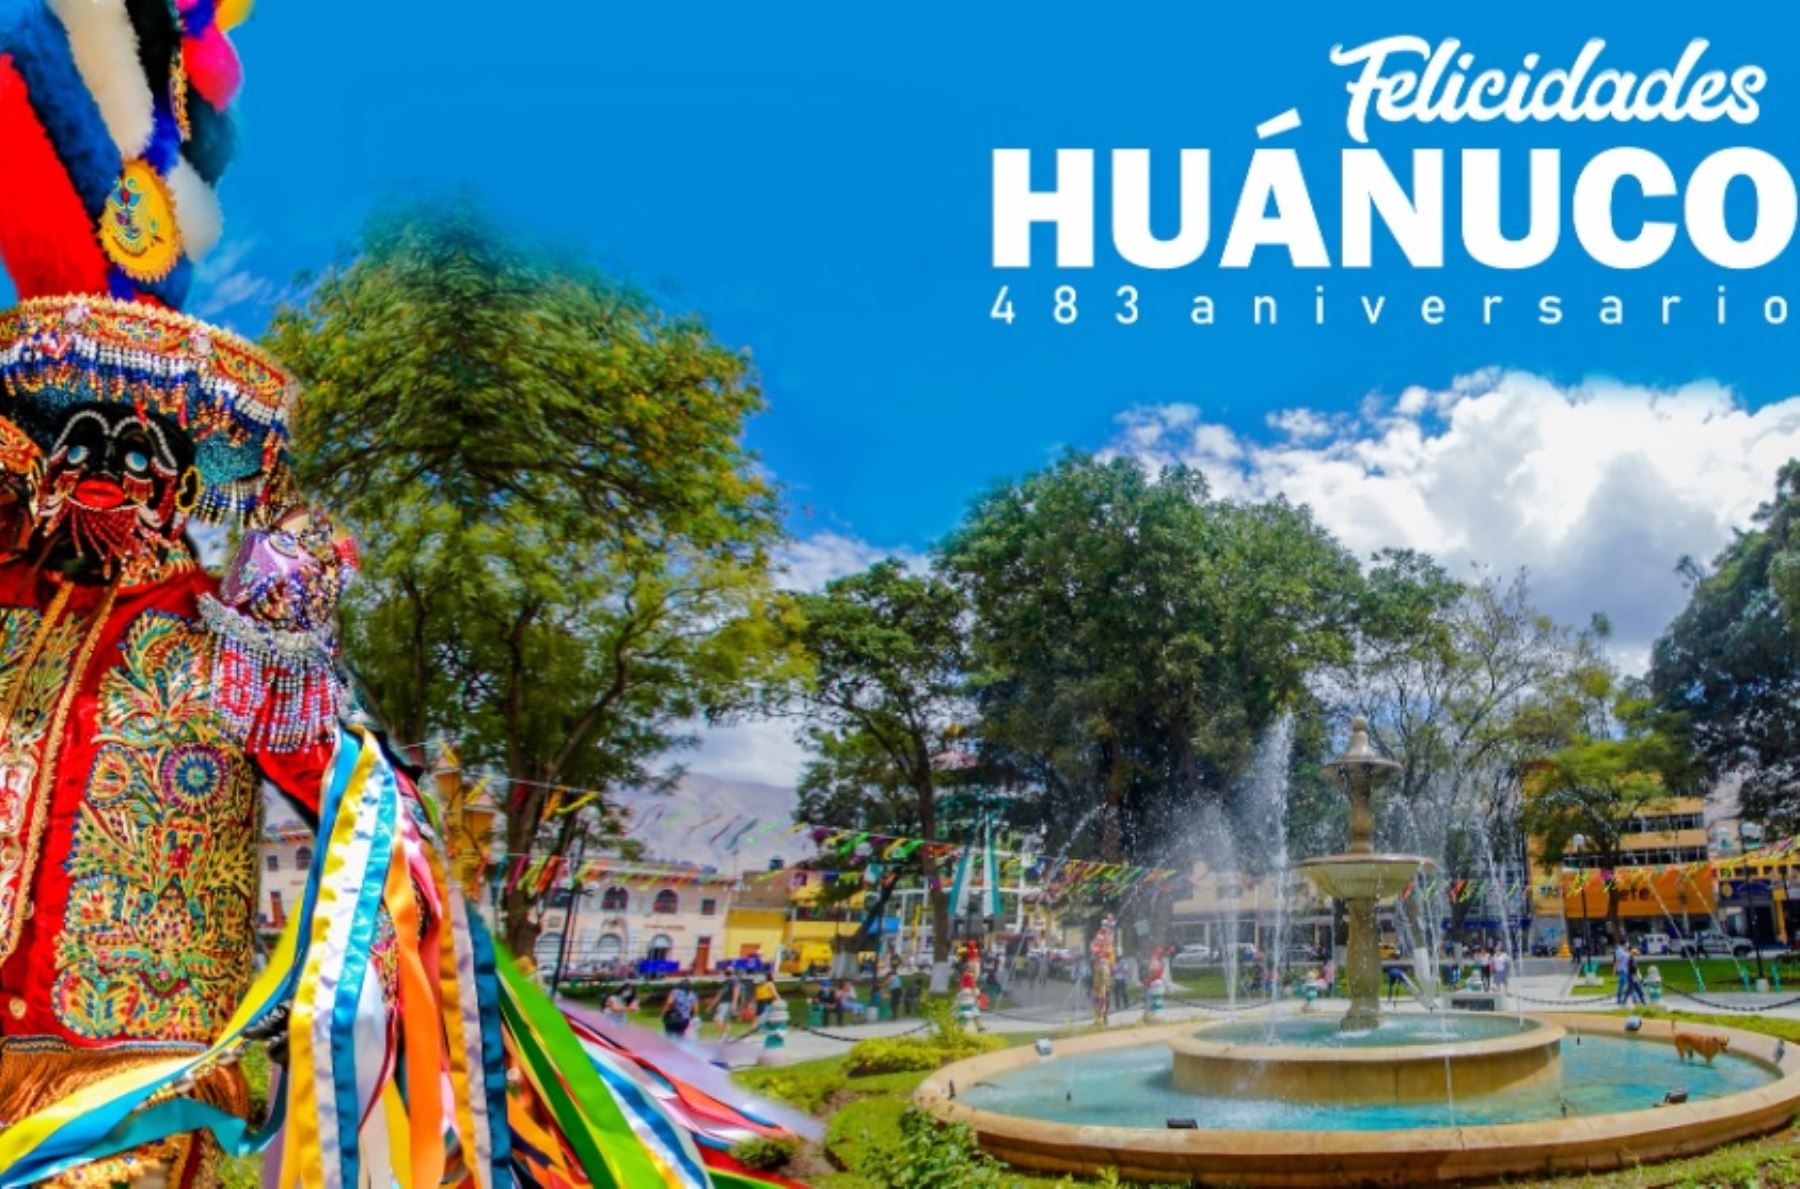 Próxima a cumplir su 483 aniversario de fundación española, la ciudad de Huánuco posee una hermosa geografía que constituye una bisagra natural entre la sierra y la selva peruana.